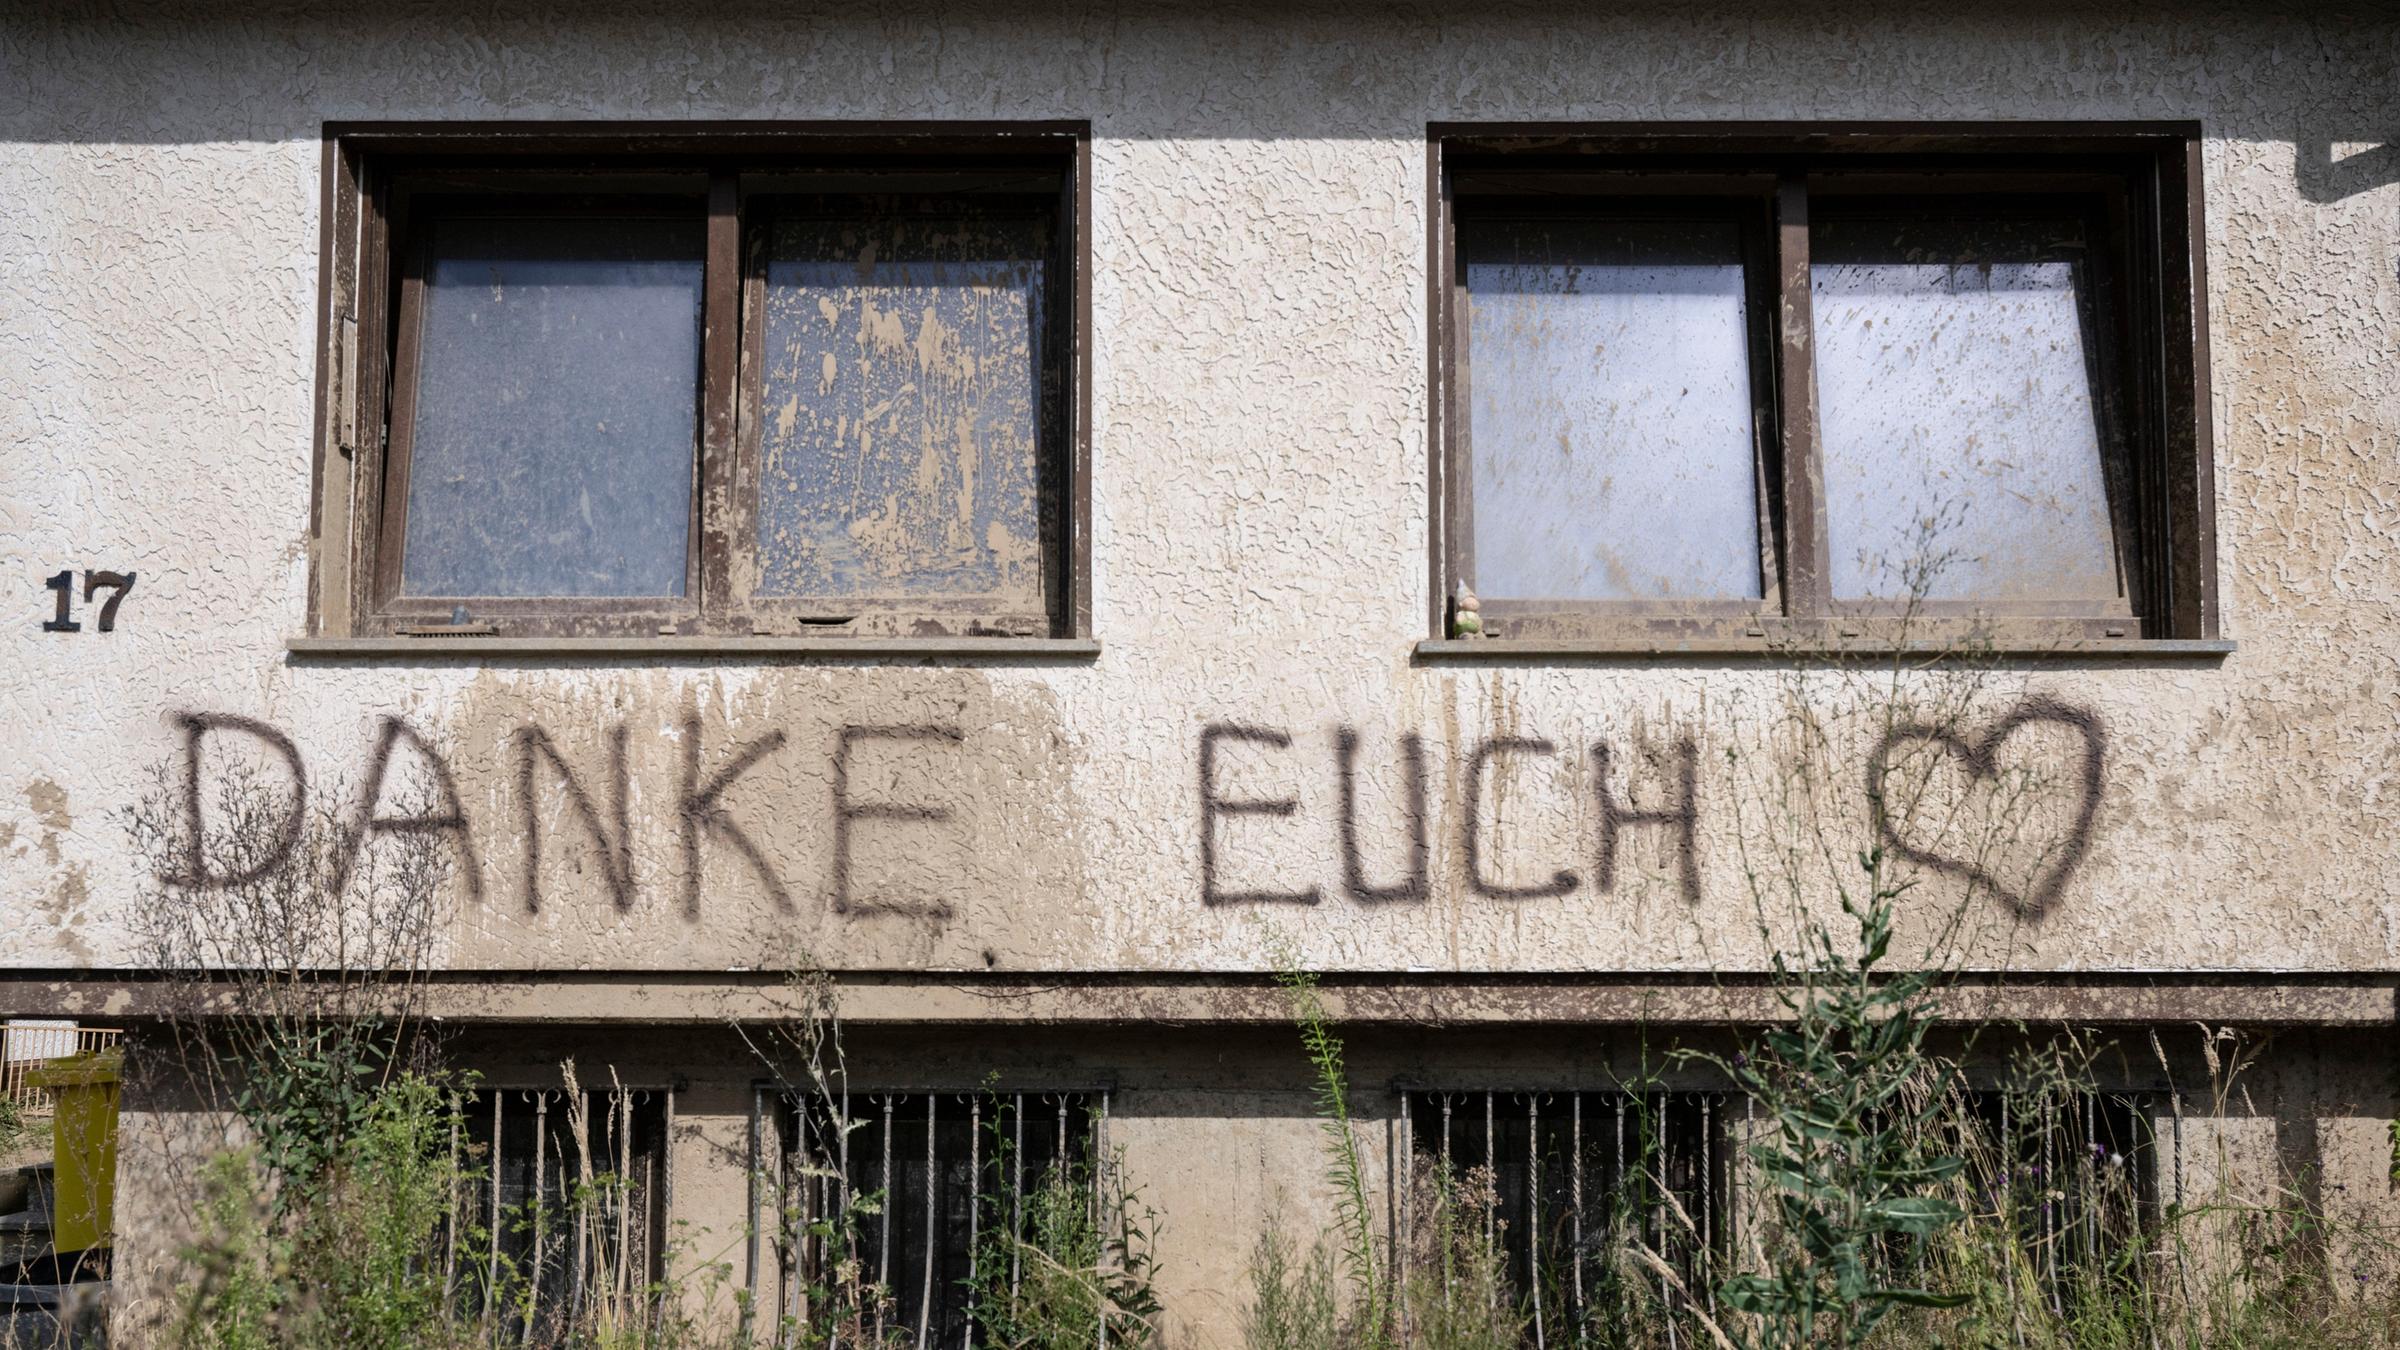 Dernau: An die Helfer gerichtet ist der Schriftzug "Danke Euch" an der Fassade eines von der Flut zerstörten Hauses in Dernau.